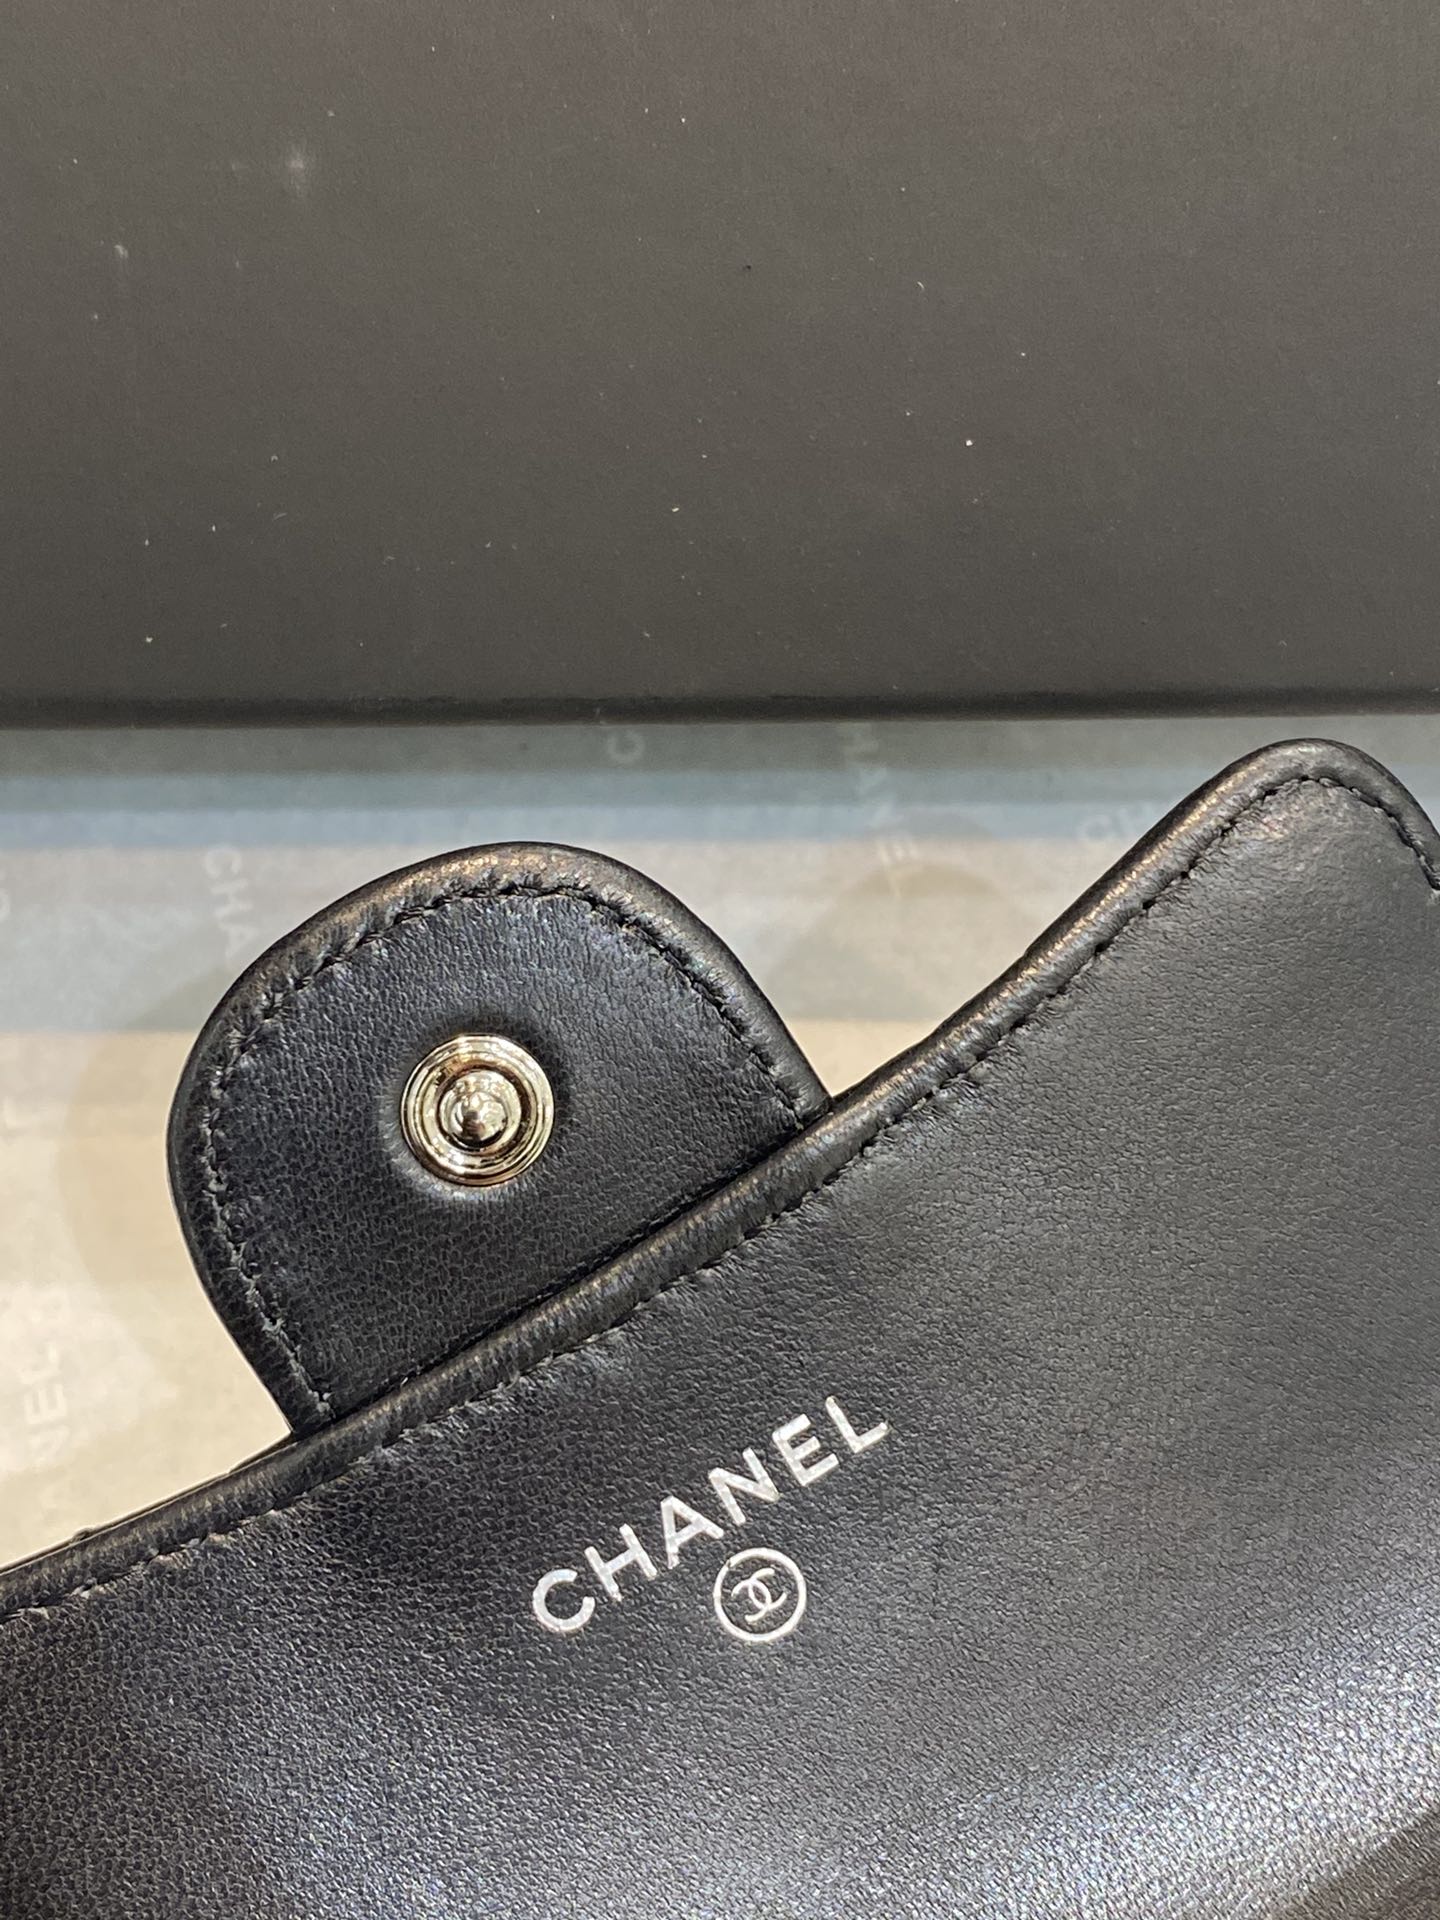 爆款 Chanel 2020新款cf卡包 11*8.5*3cm 黑色 小羊皮 银扣